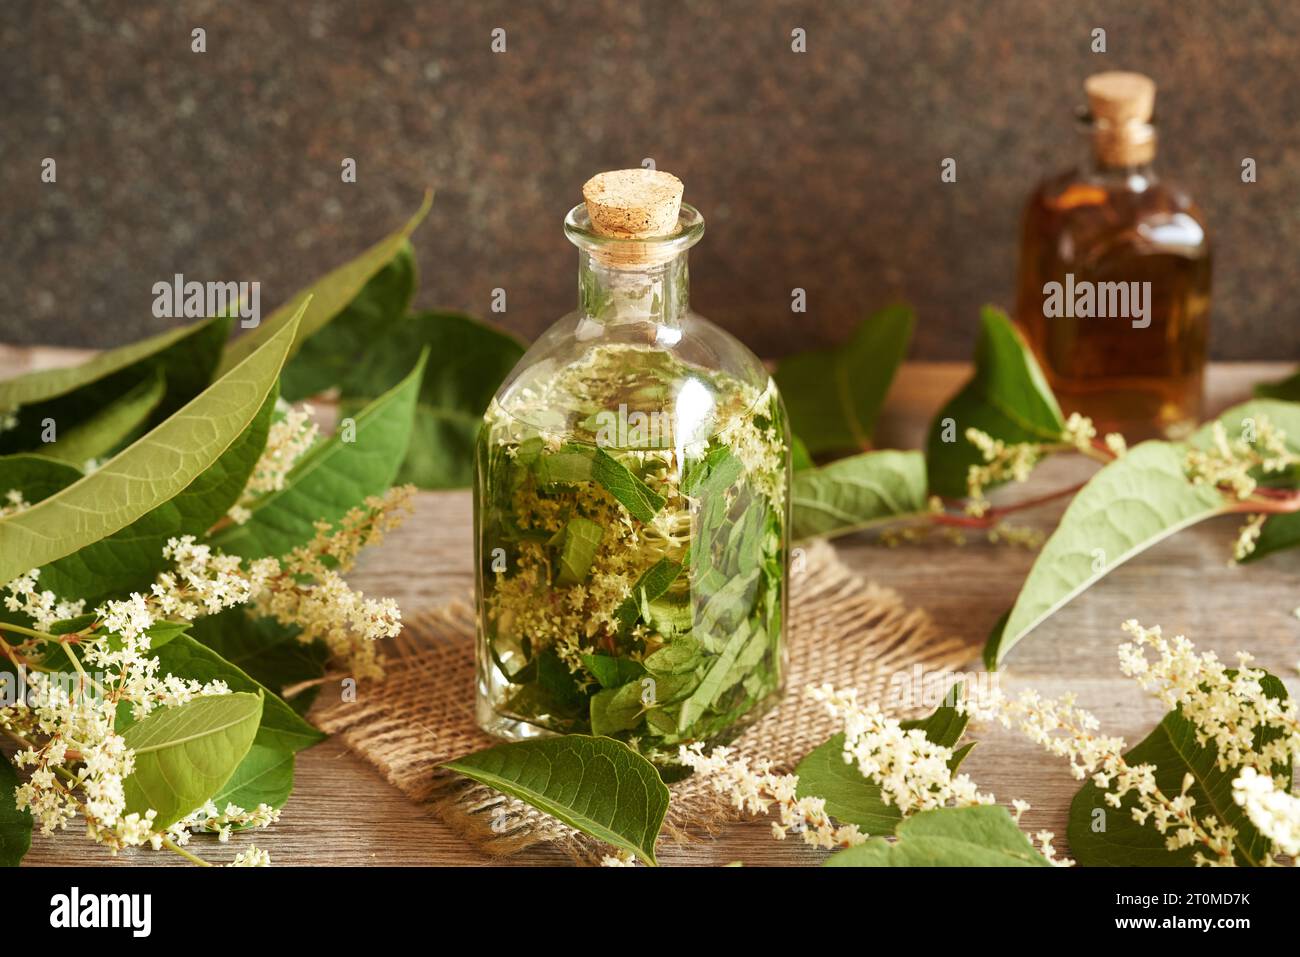 Zubereitung von hausgemachter Tinktur aus frischem japanischem Knotengras oder Reynoutria japonica Blüten und Blättern Stockfoto